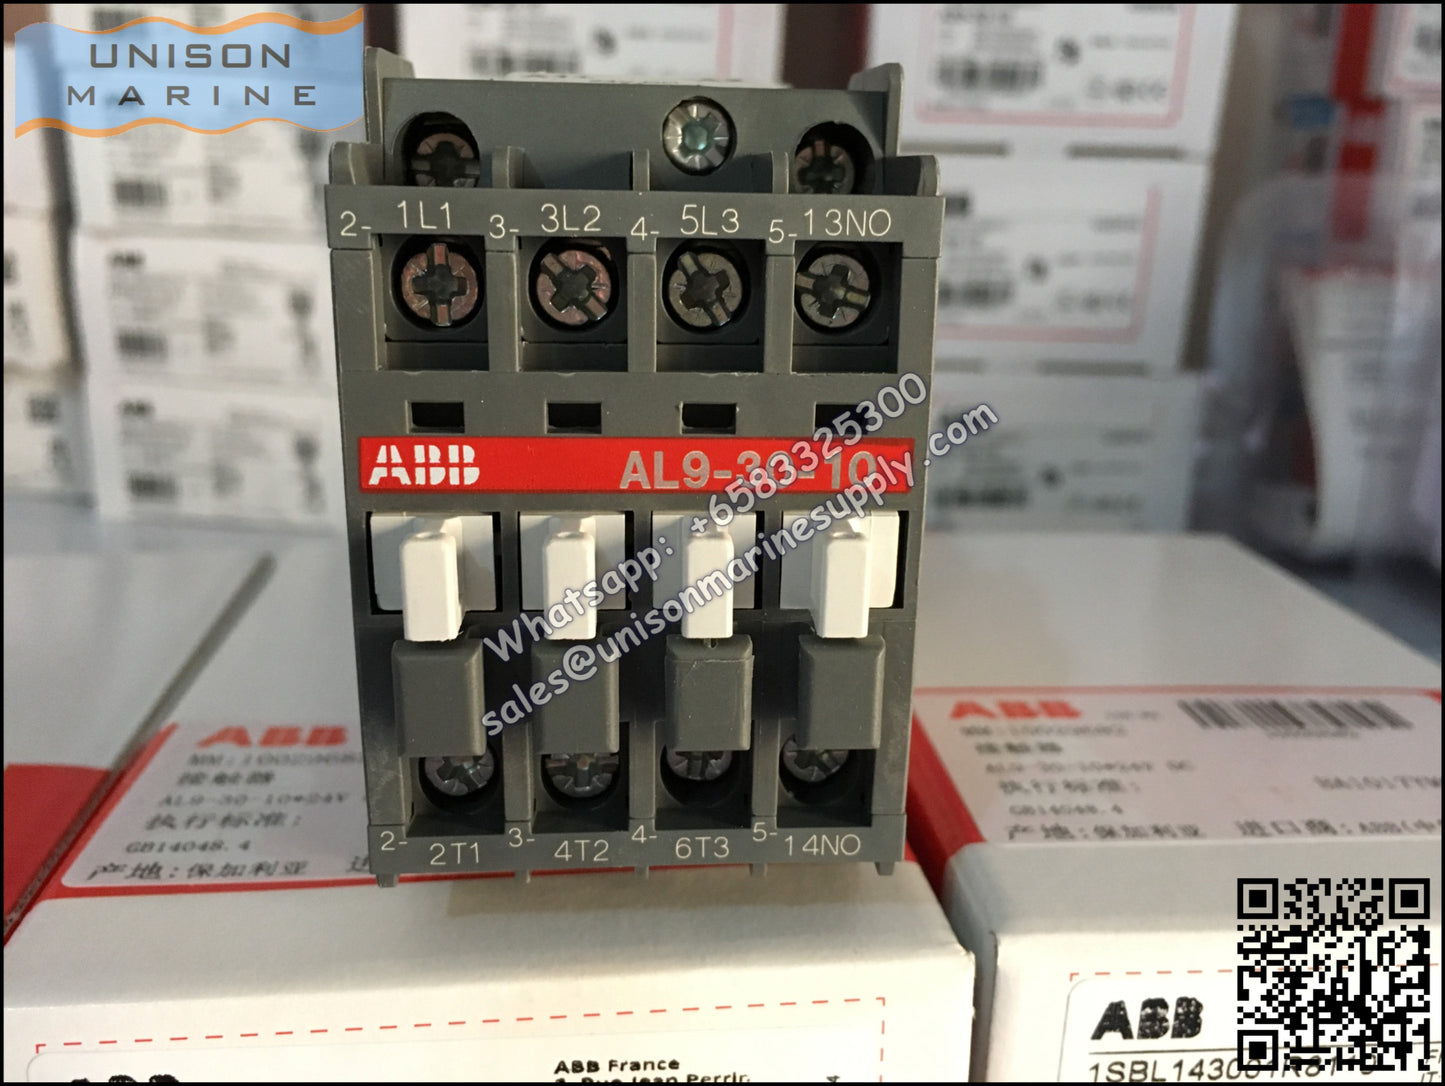 ABB Magnetic Contactors AL Series : AL9-30-10 / AL9-30-01